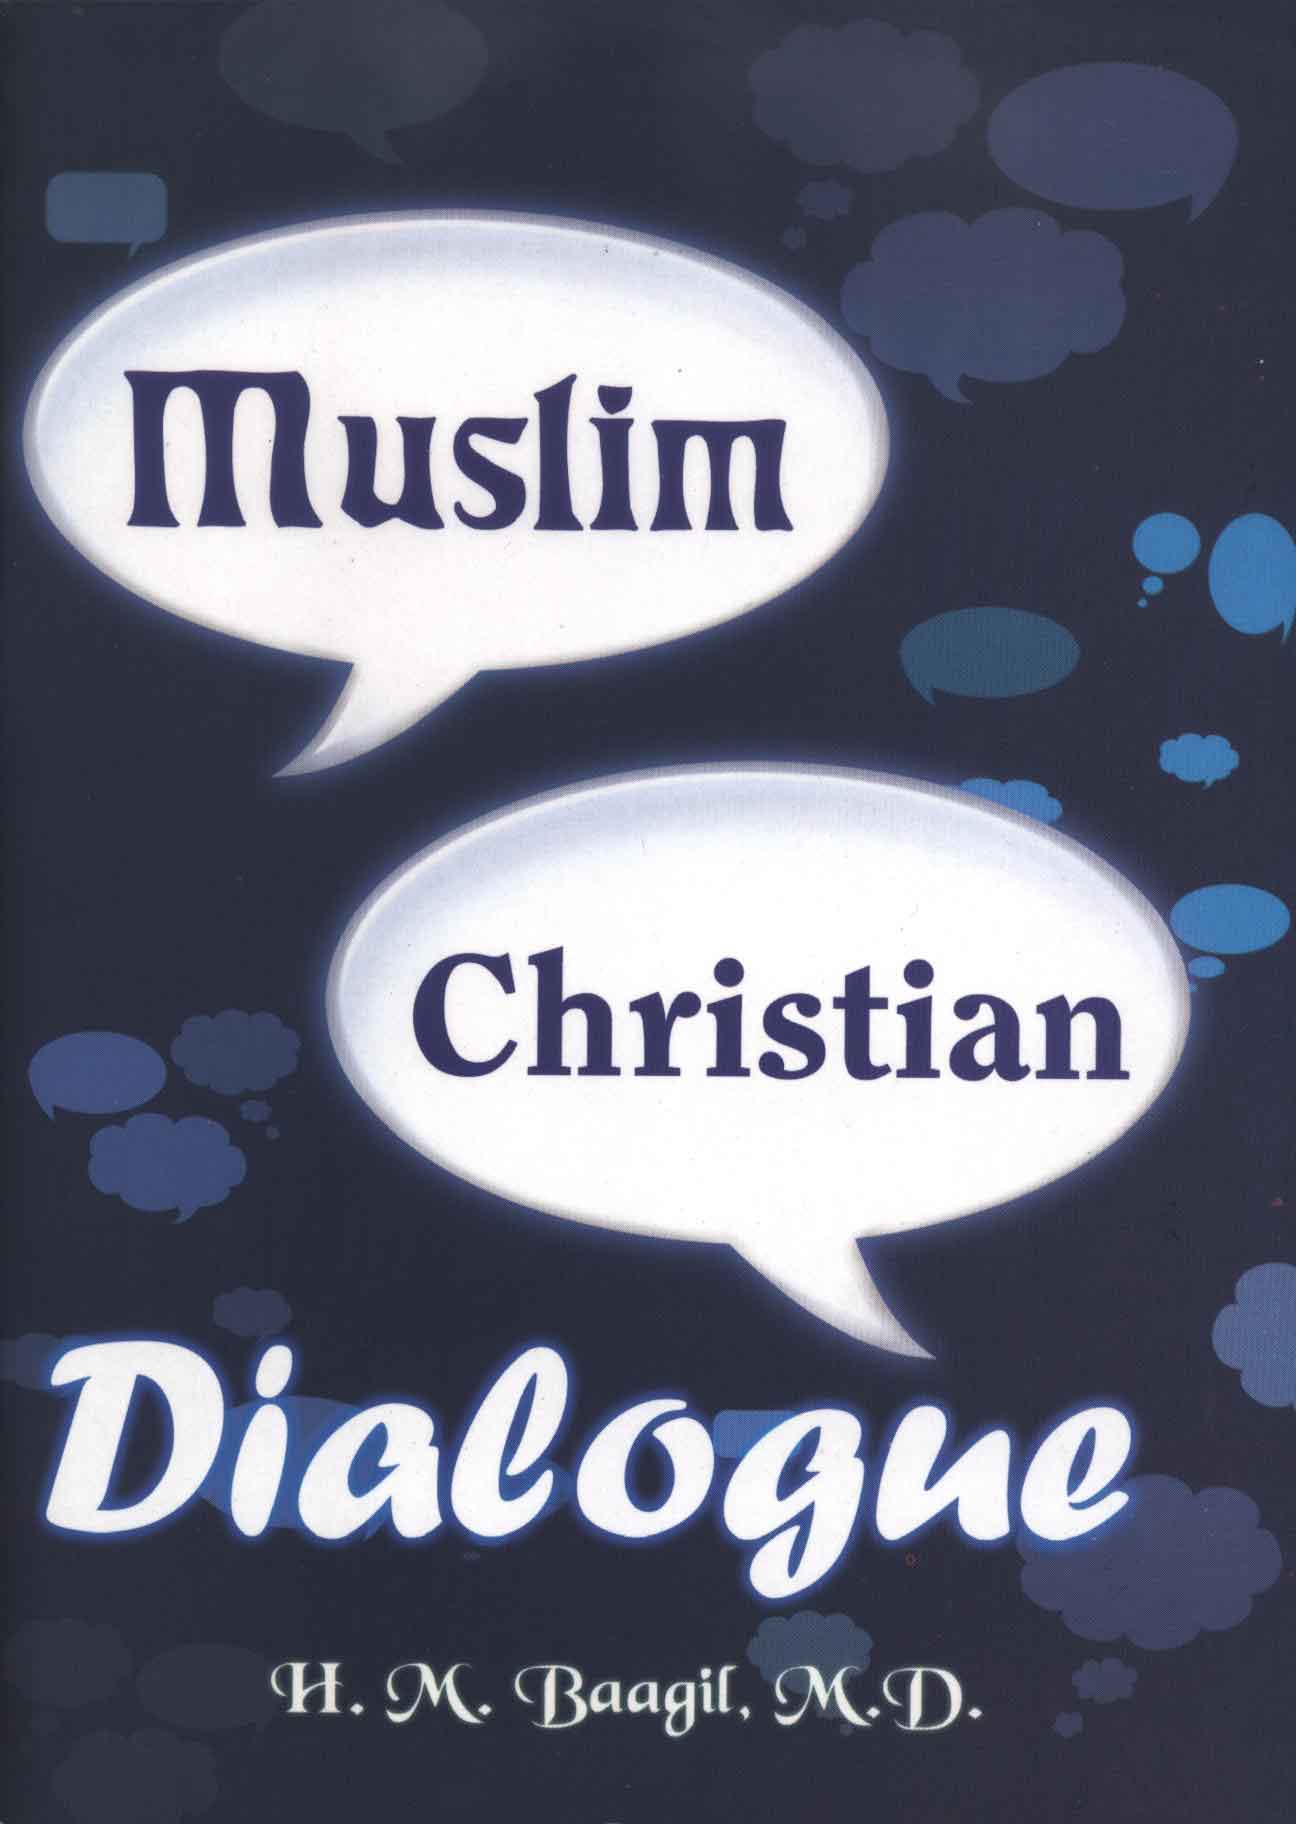 穆斯林与基督徒对话录